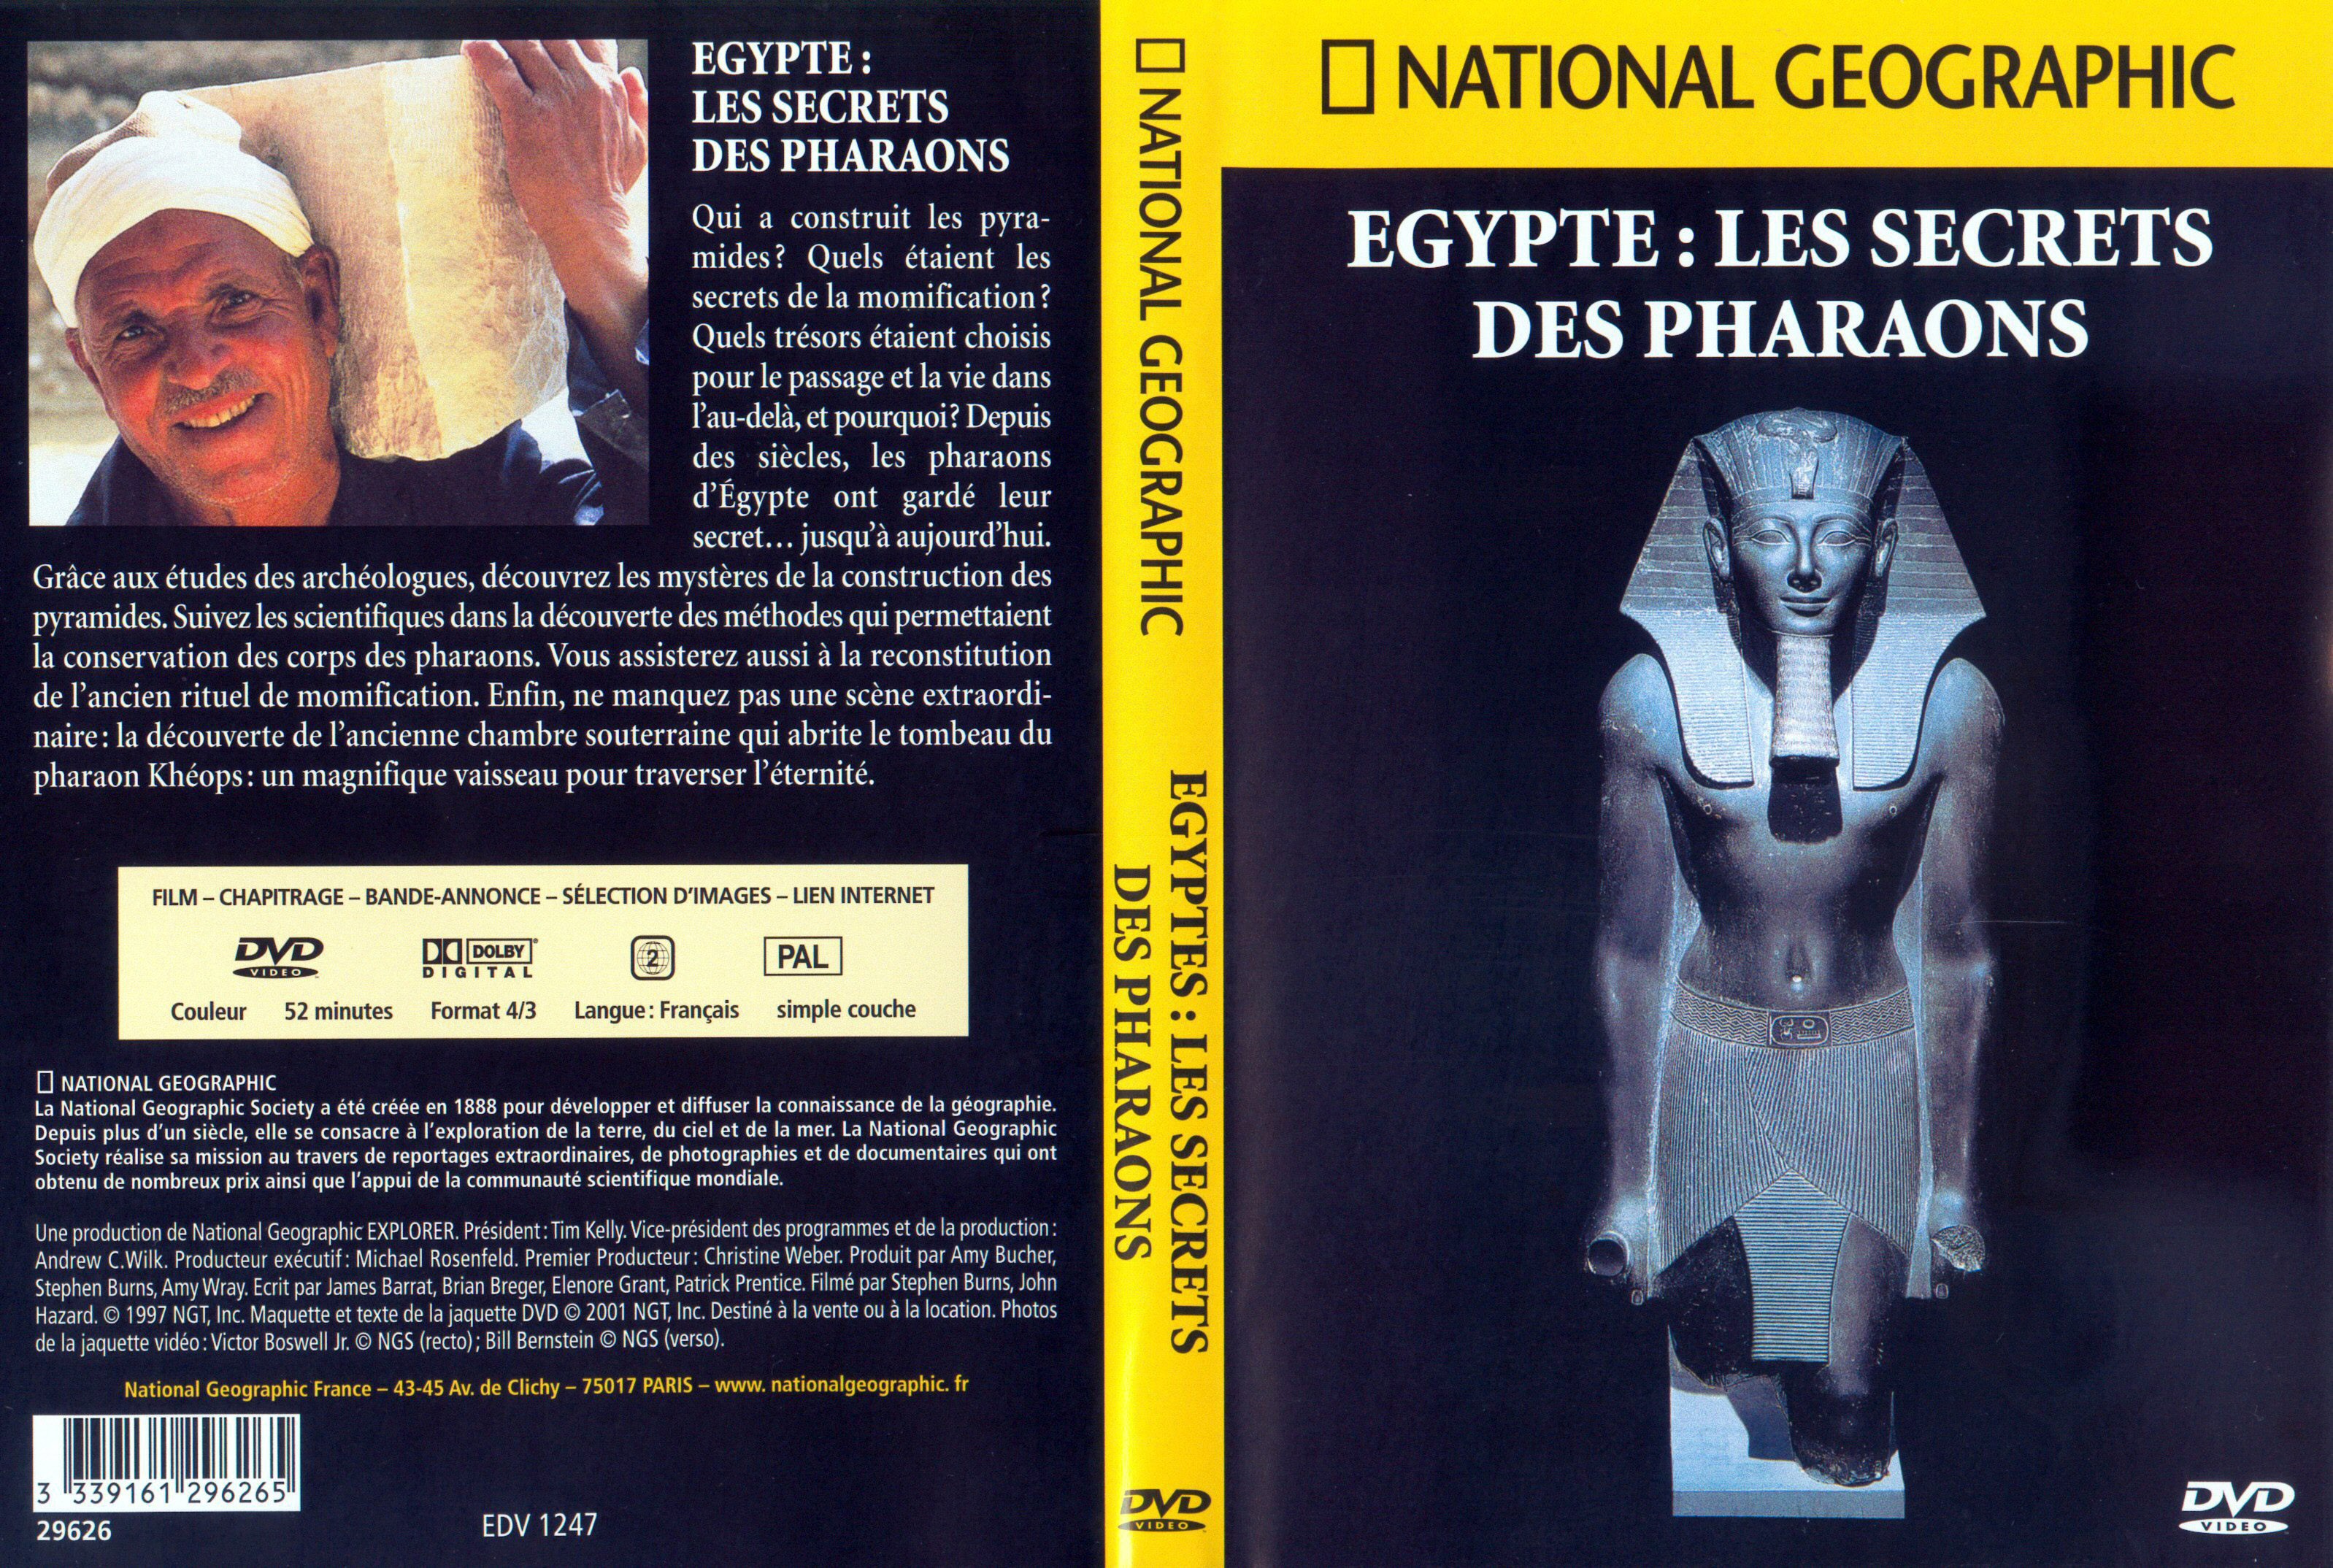 Jaquette DVD National Geographic - Egypte les secrets des Pharaons